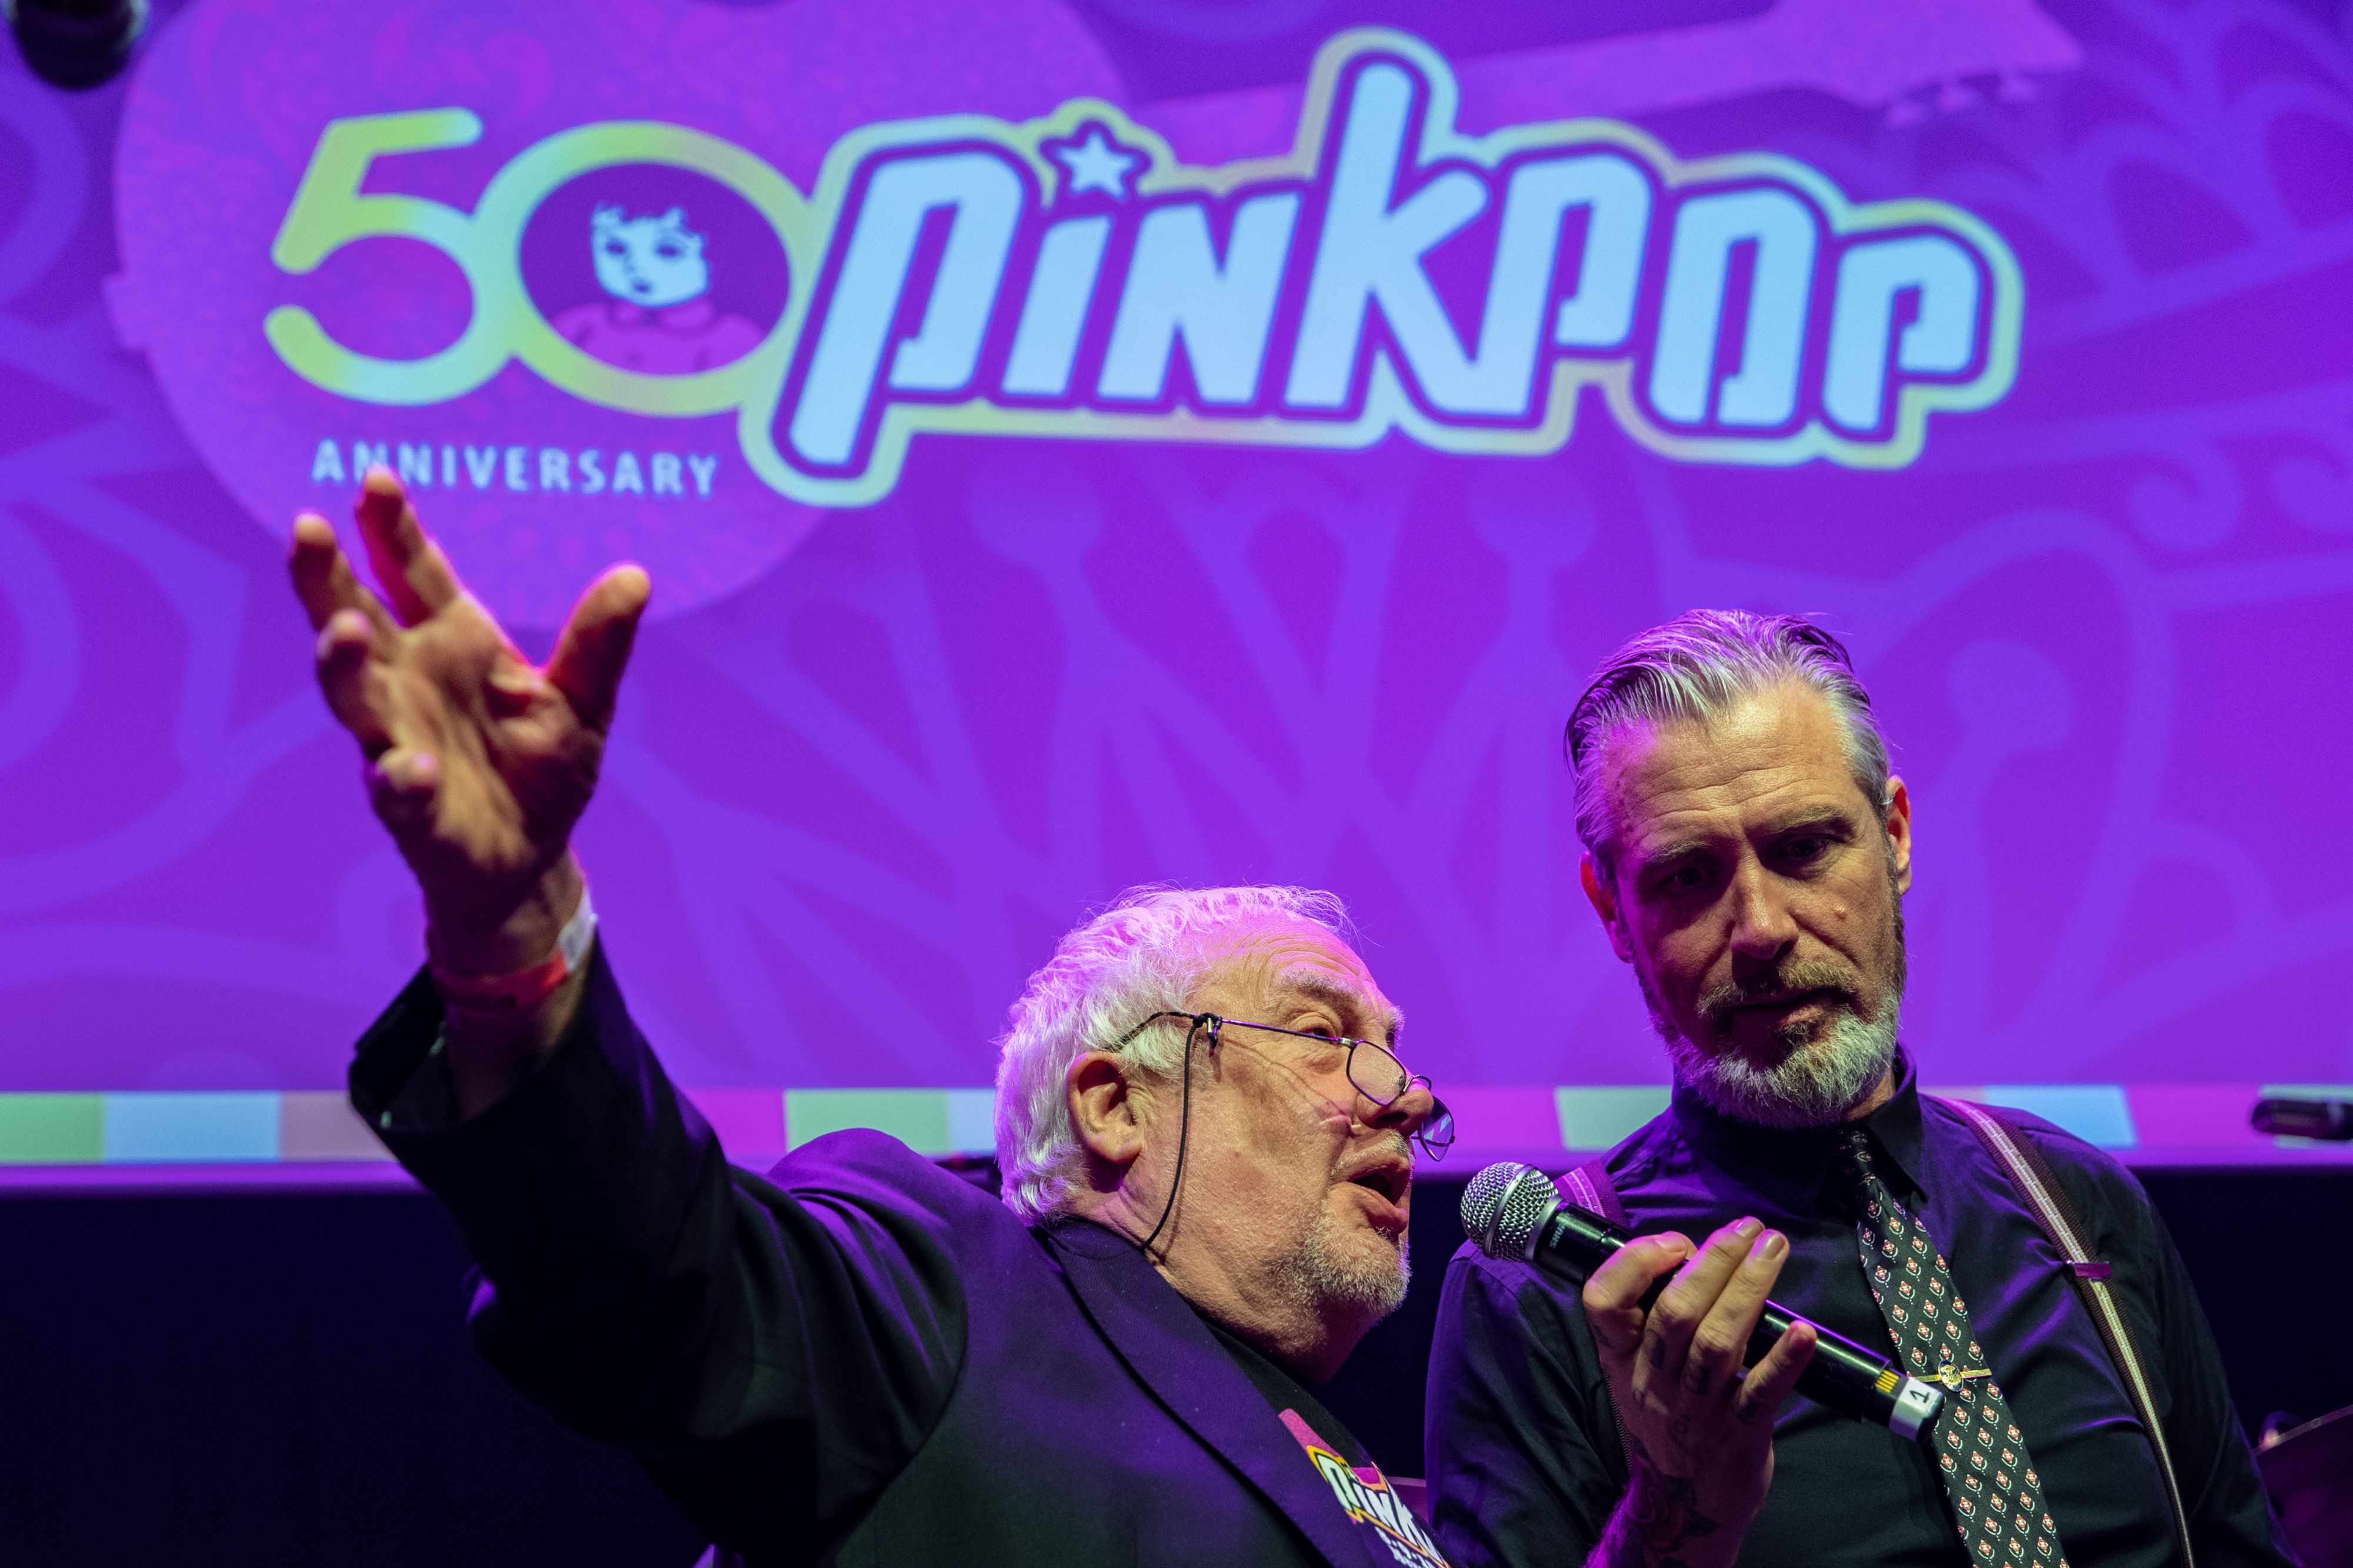 Speciale jubileummunt voor 50-jarig bestaan Pinkpop